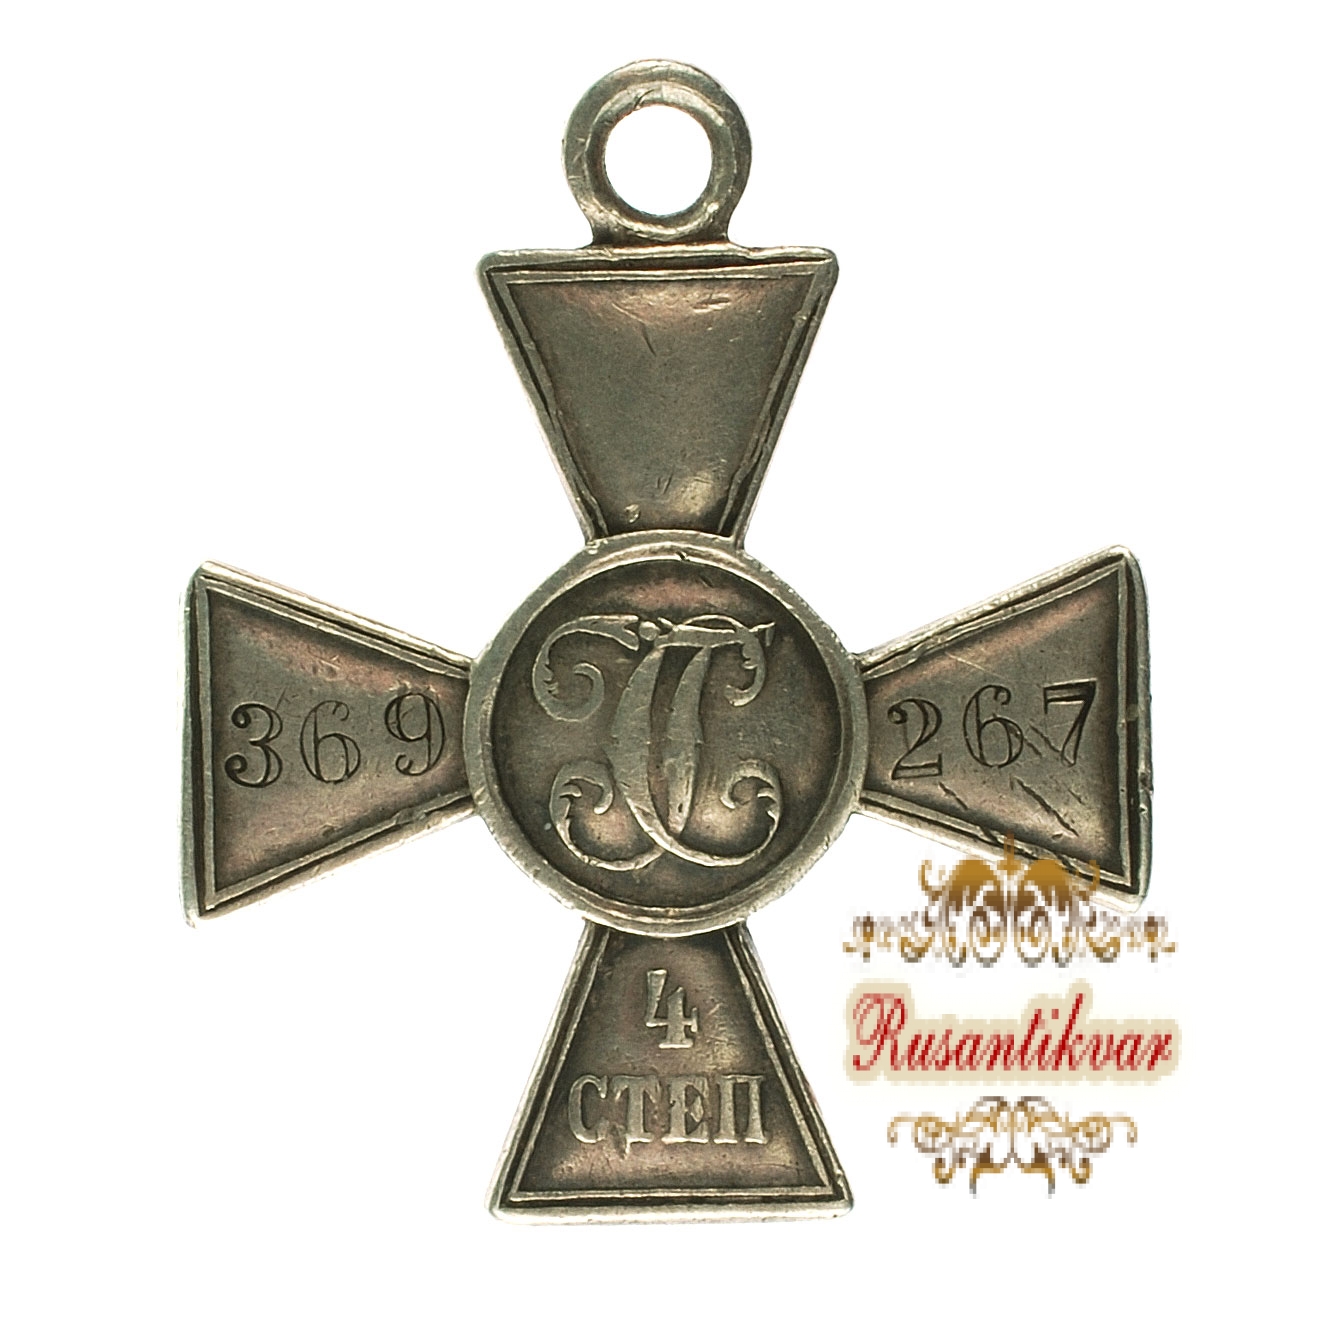 Георгиевский крест 4 степени - 369.267 (39 пехотная дивизия , за Эрзерум).